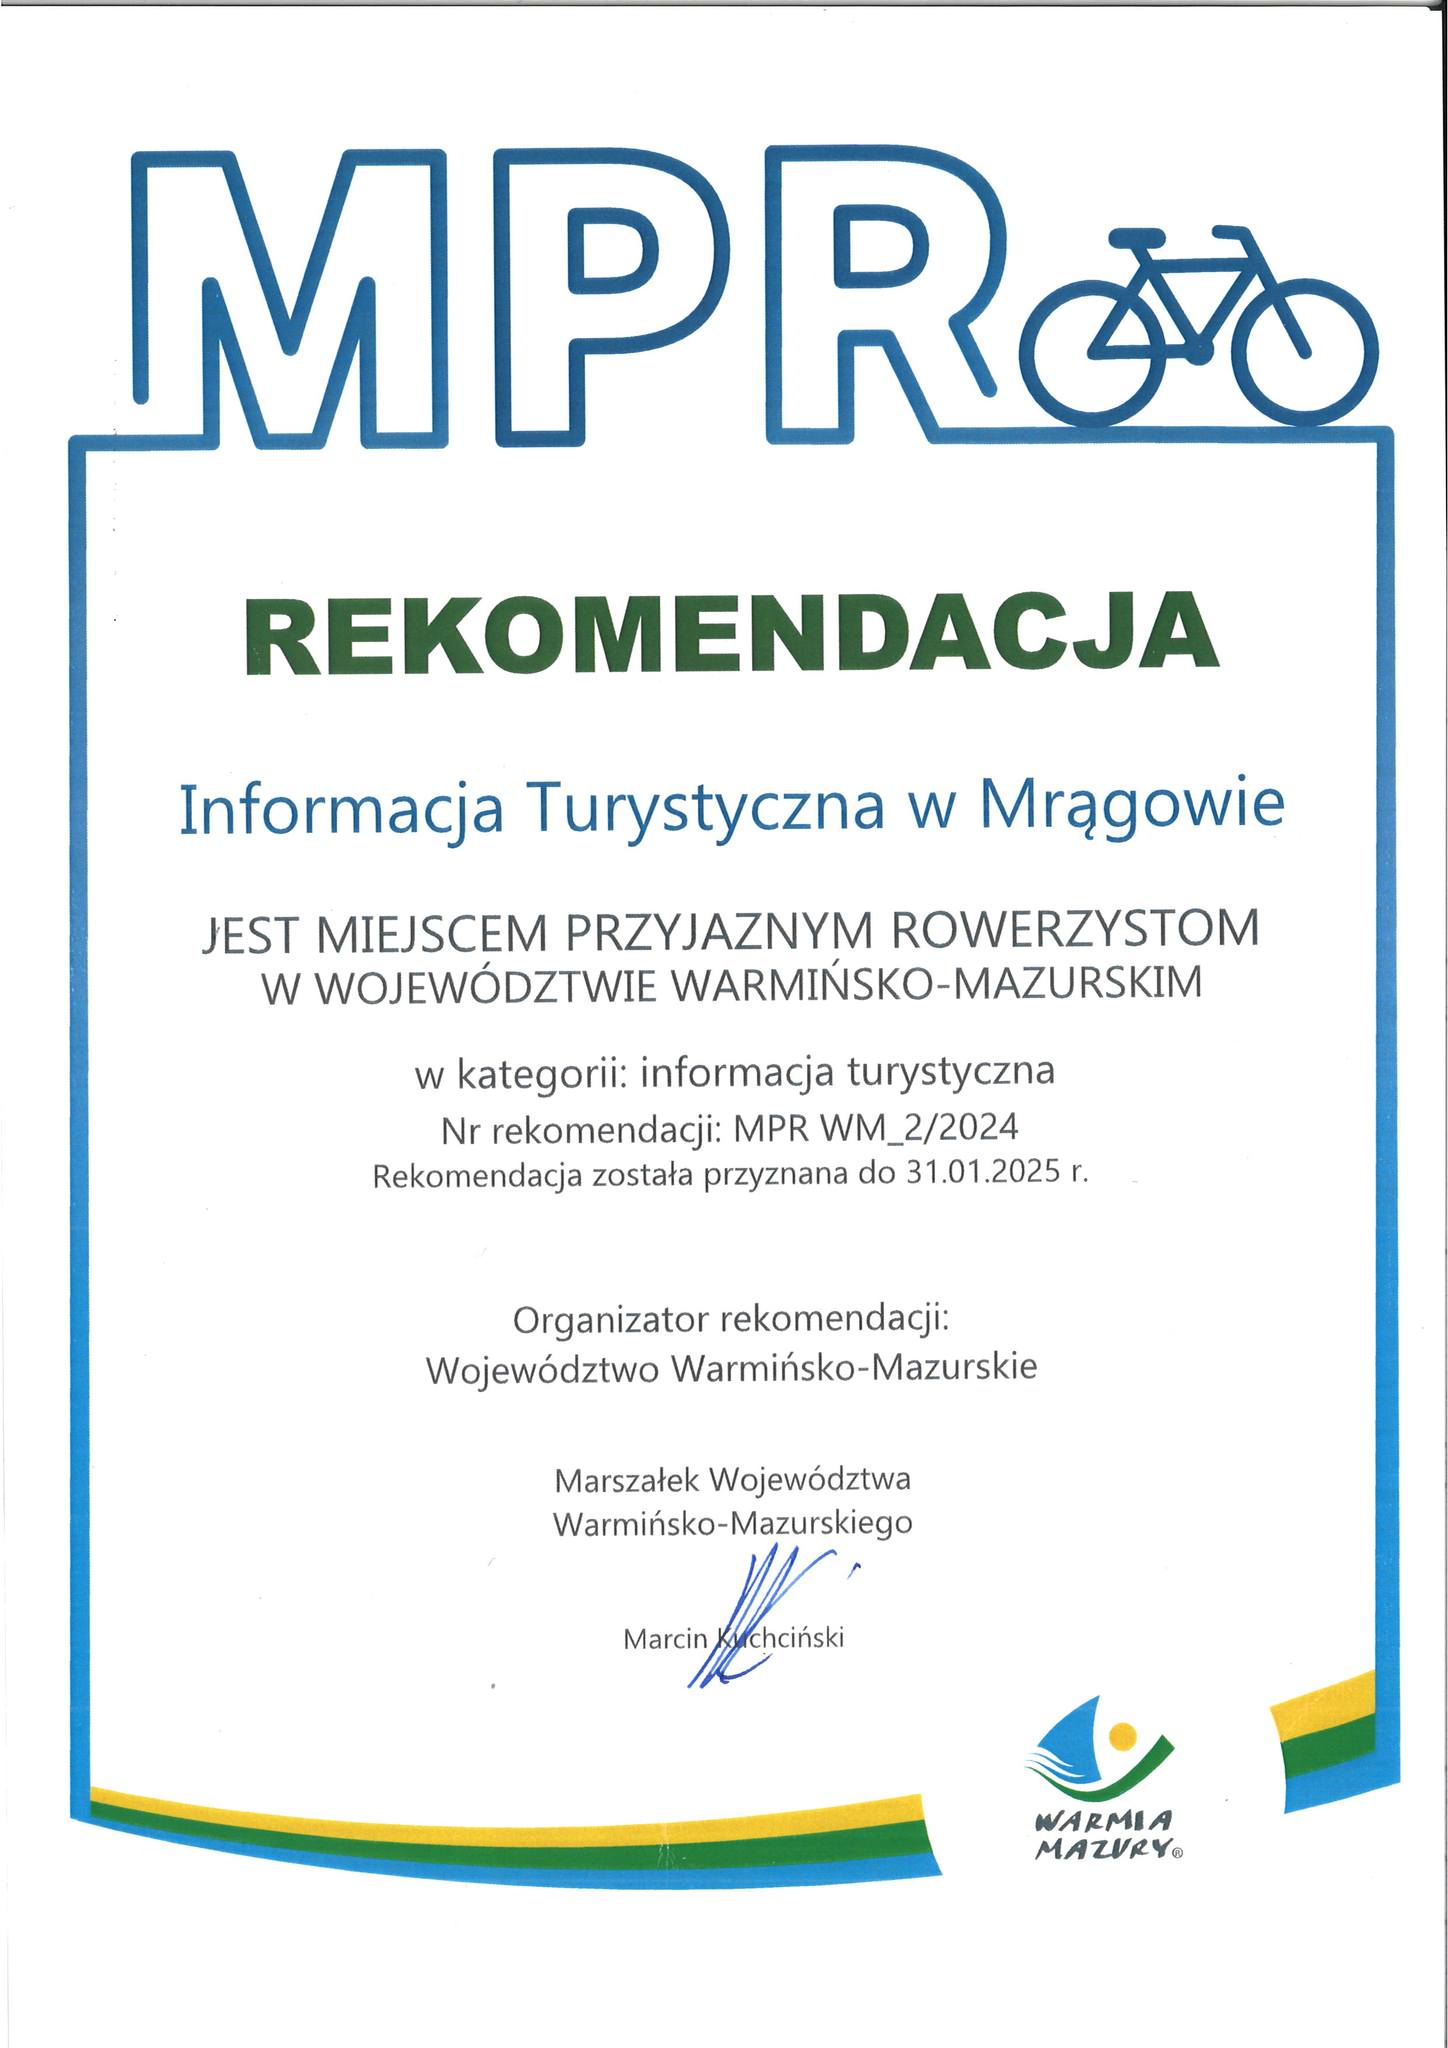 Obraz artykułu - Przedłużono Rekomendację Miejsca Przyjaznego Rowerzystom dla Informacji Turystycznej w Mrągowie